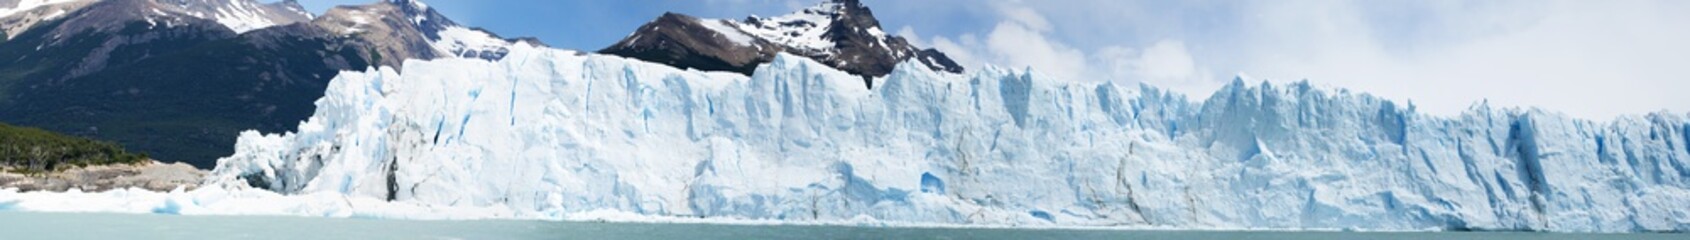  Patagonia, 23/11/2010: il fronte del ghiacciaio Upsala, il cui nome deriva dall'Università svedese di Uppsala che ha condotto la prima indagine glaciologica della regione nel ventesimo secolo